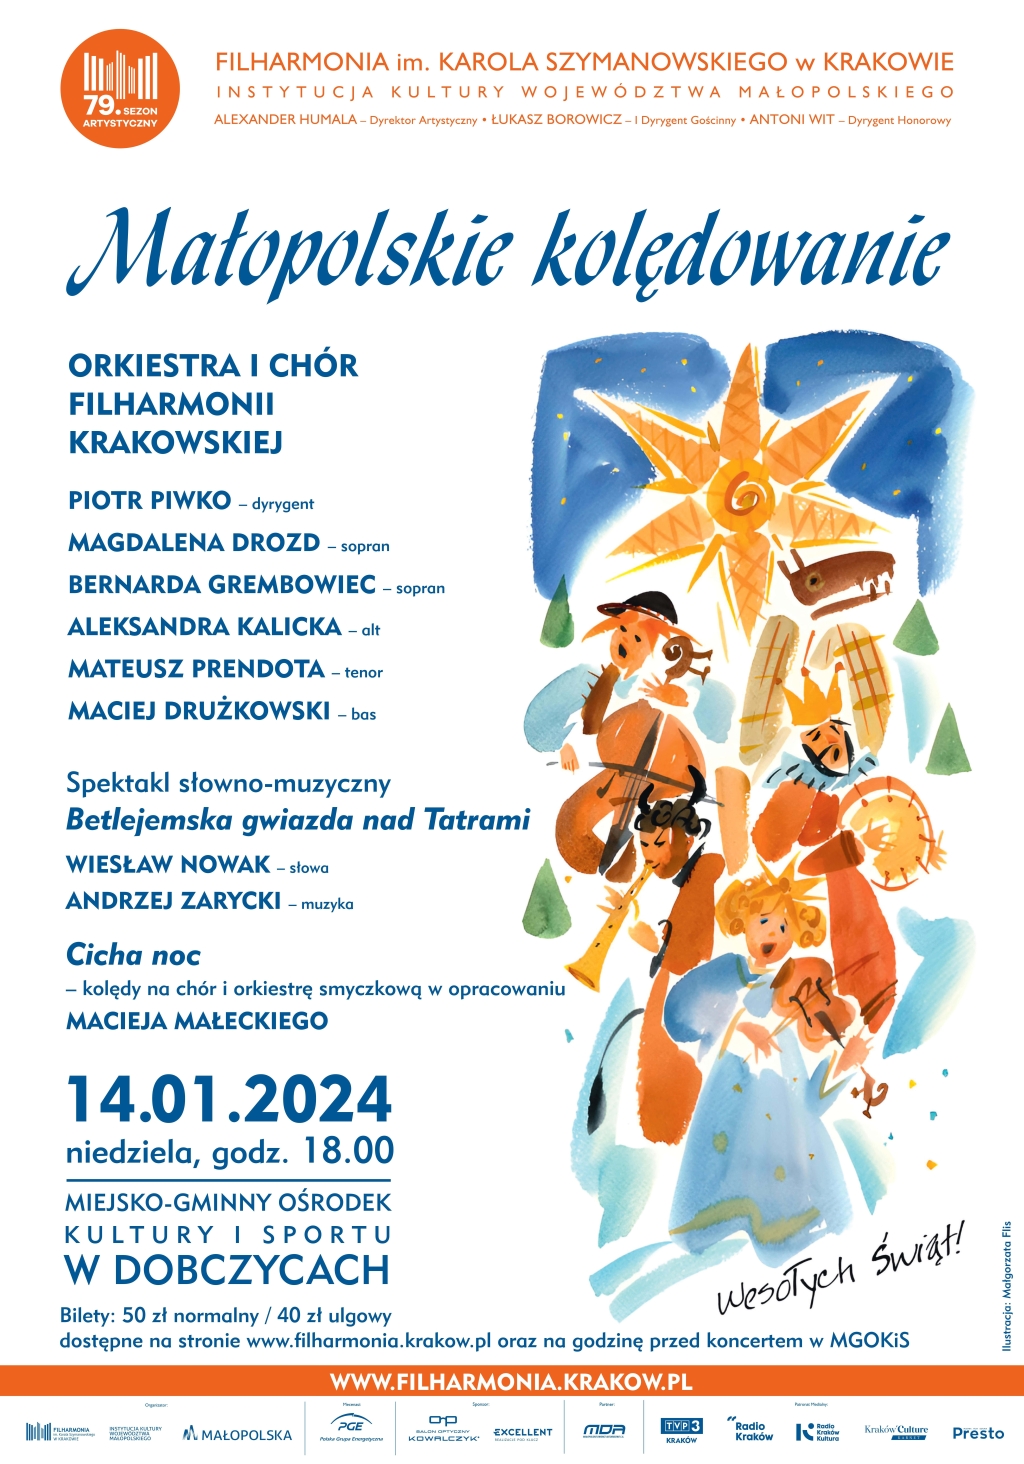 Małopolskie kolędowanie – Koncert Filharmonii Krakowskiej w Dobczycach